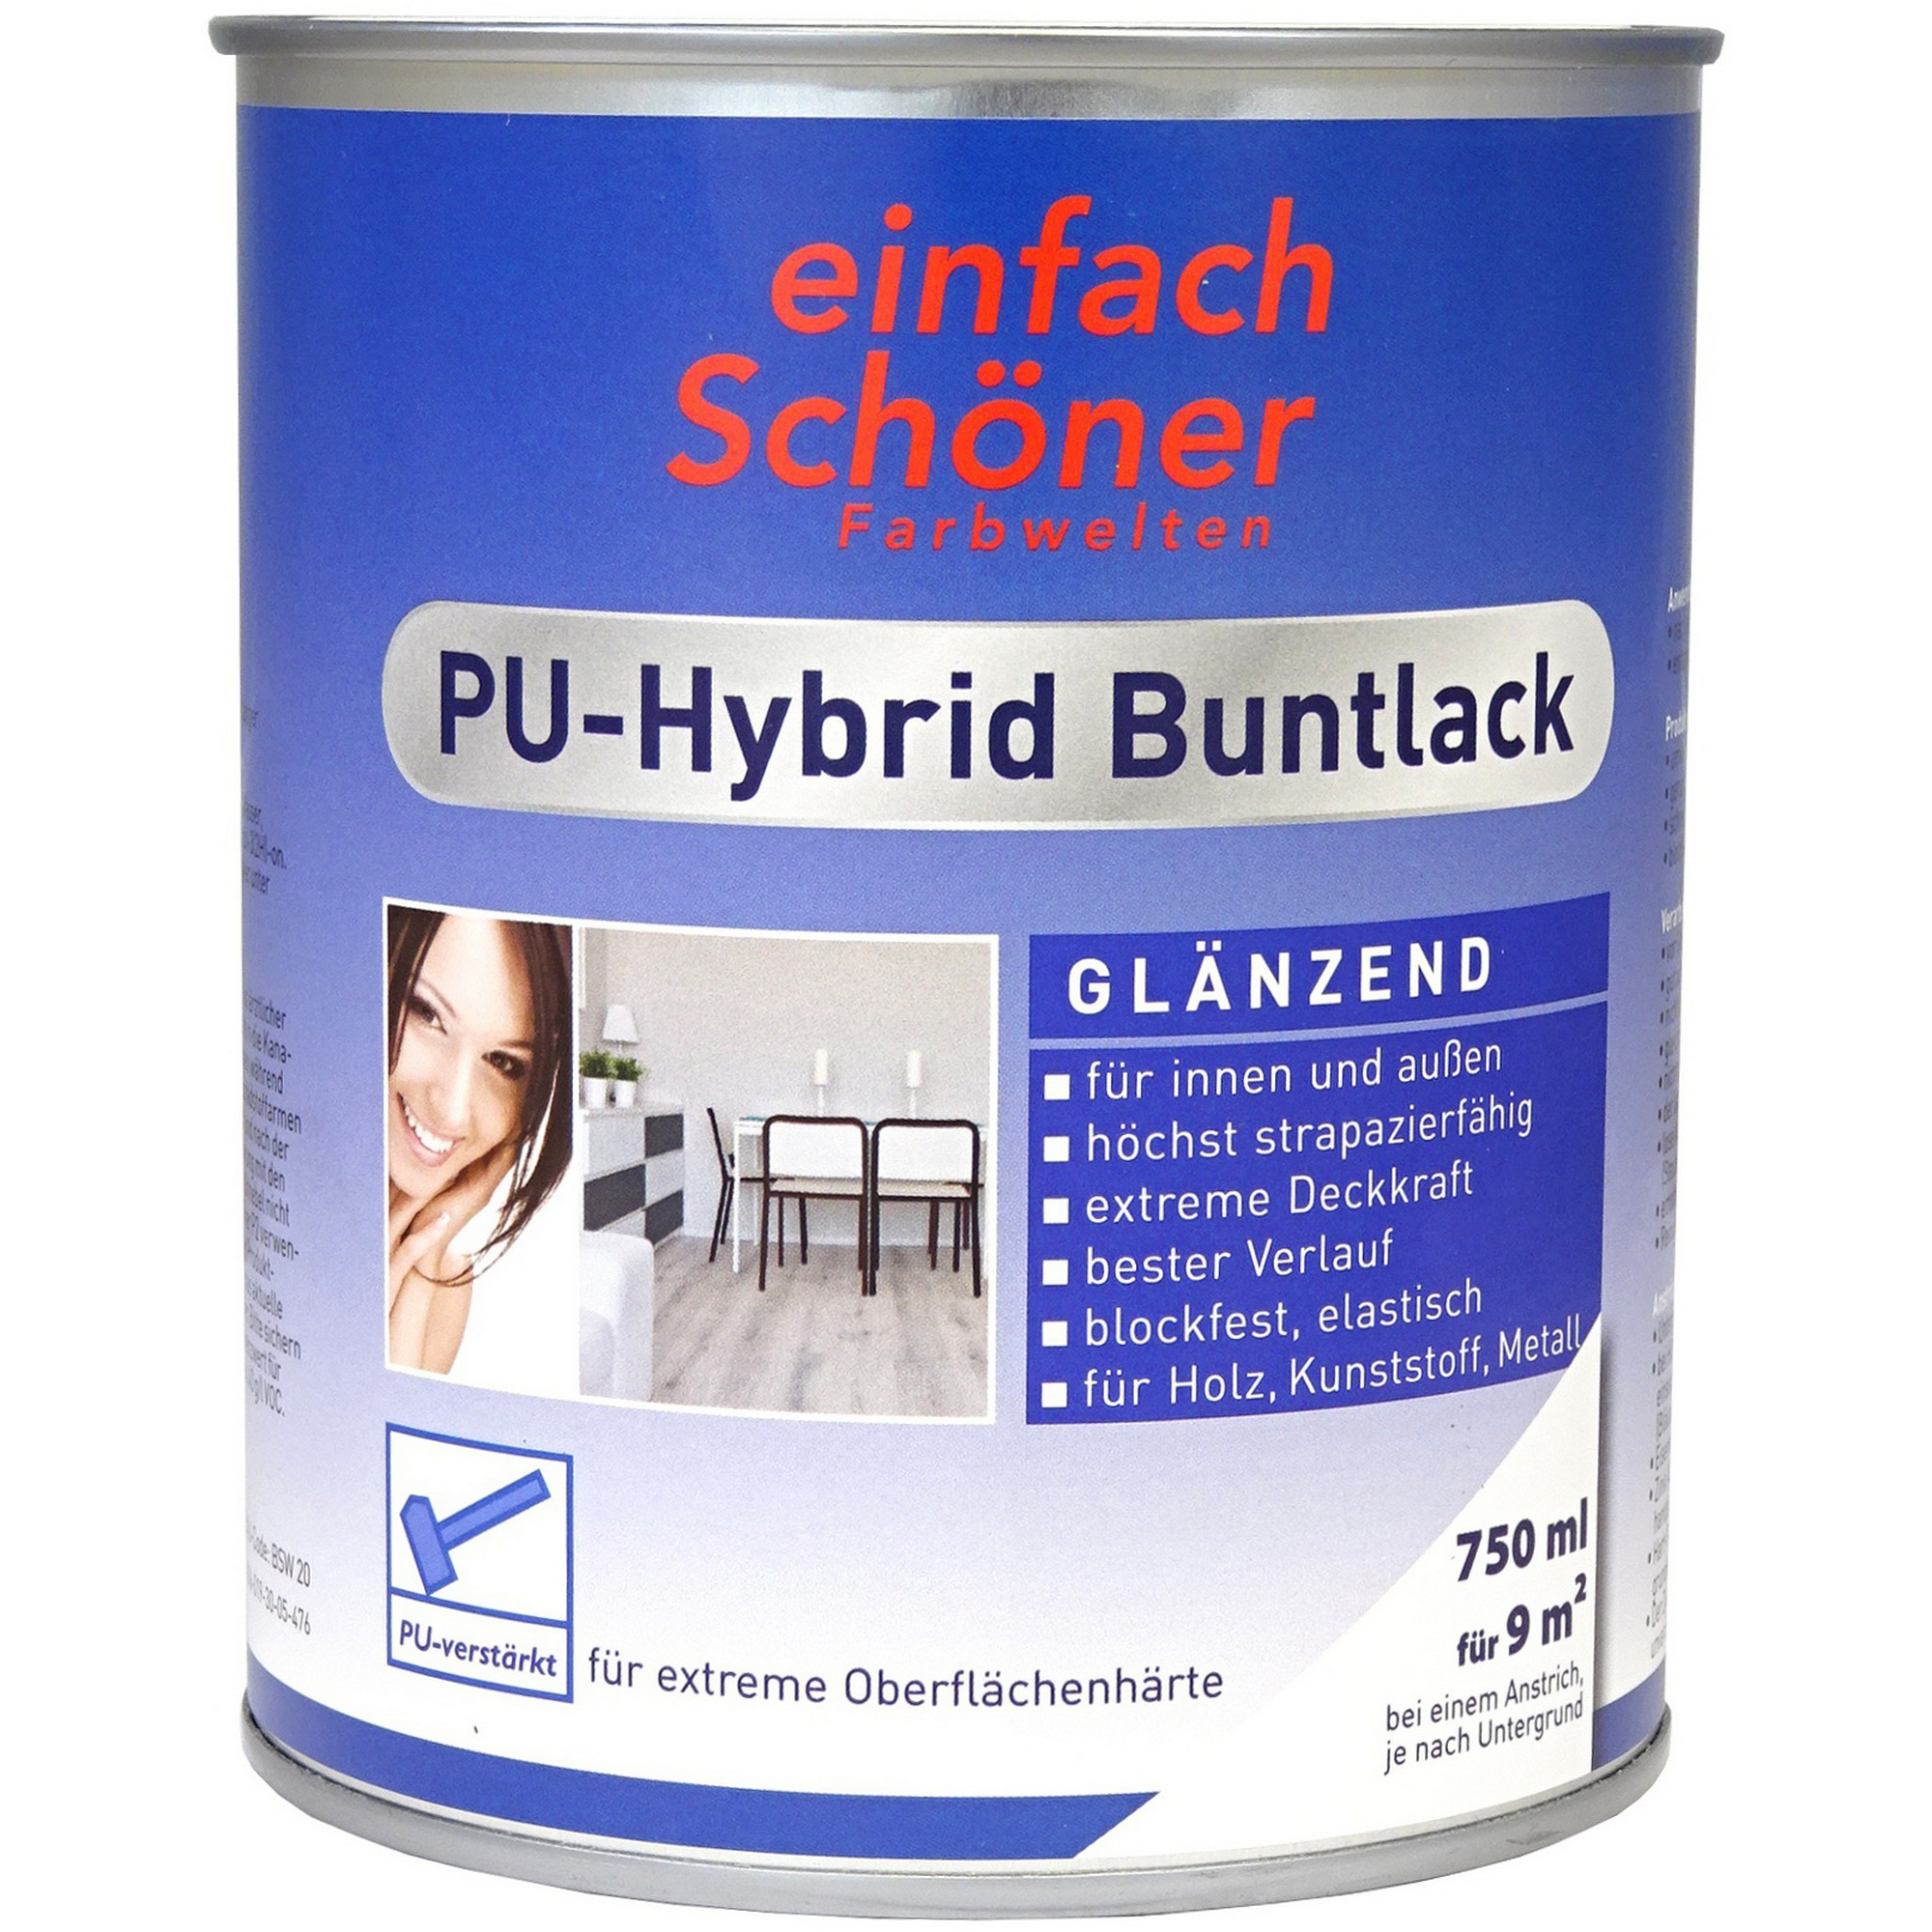 PU-Hybrid Buntlack tiefschwarz glänzend 750 ml + product picture